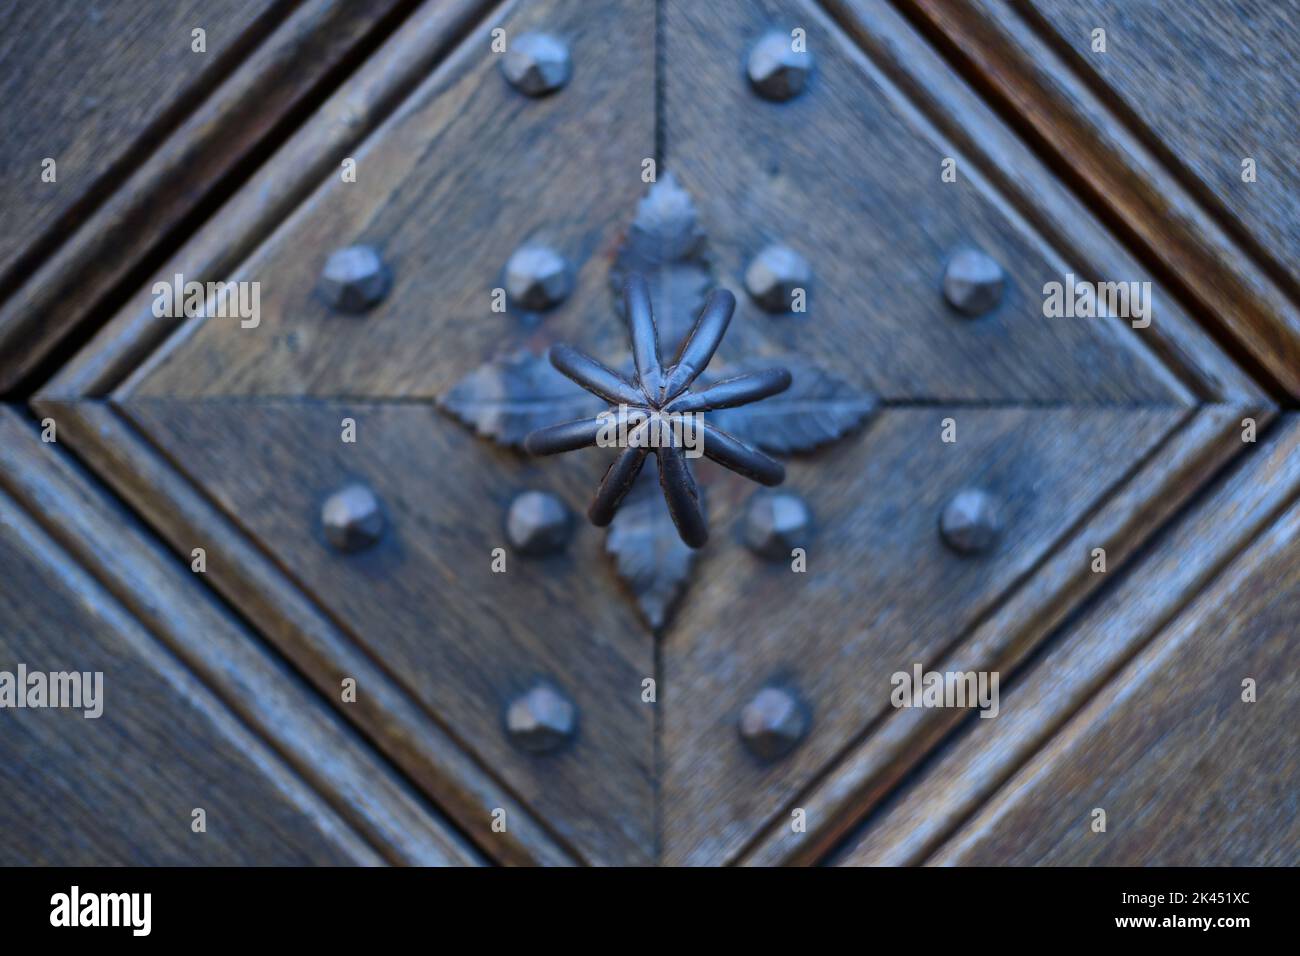 Detail of an old wooden door with traditional metal door knob. Detailausschnitt einer alten hölzernen Tür mit traditionellem  Türknauf aus Metall. Stock Photo